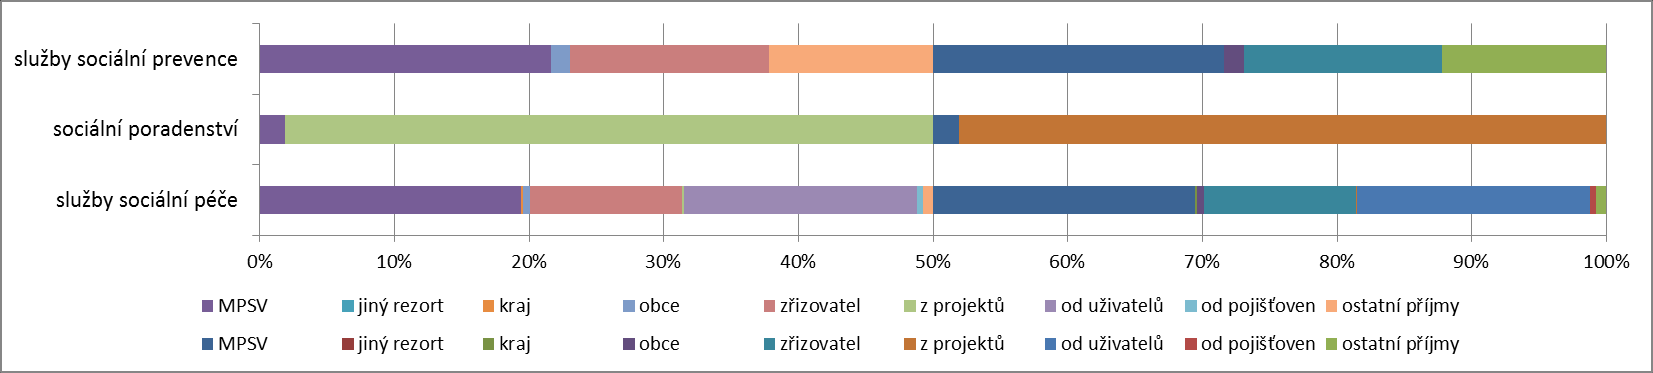 Struktura zdrojů financování dle skupin sociálních služeb v procentech: Podrobnější údaje o vybraných druzích sociálních služeb působících na území Českolipska (údaje z roku 2010) V následující části